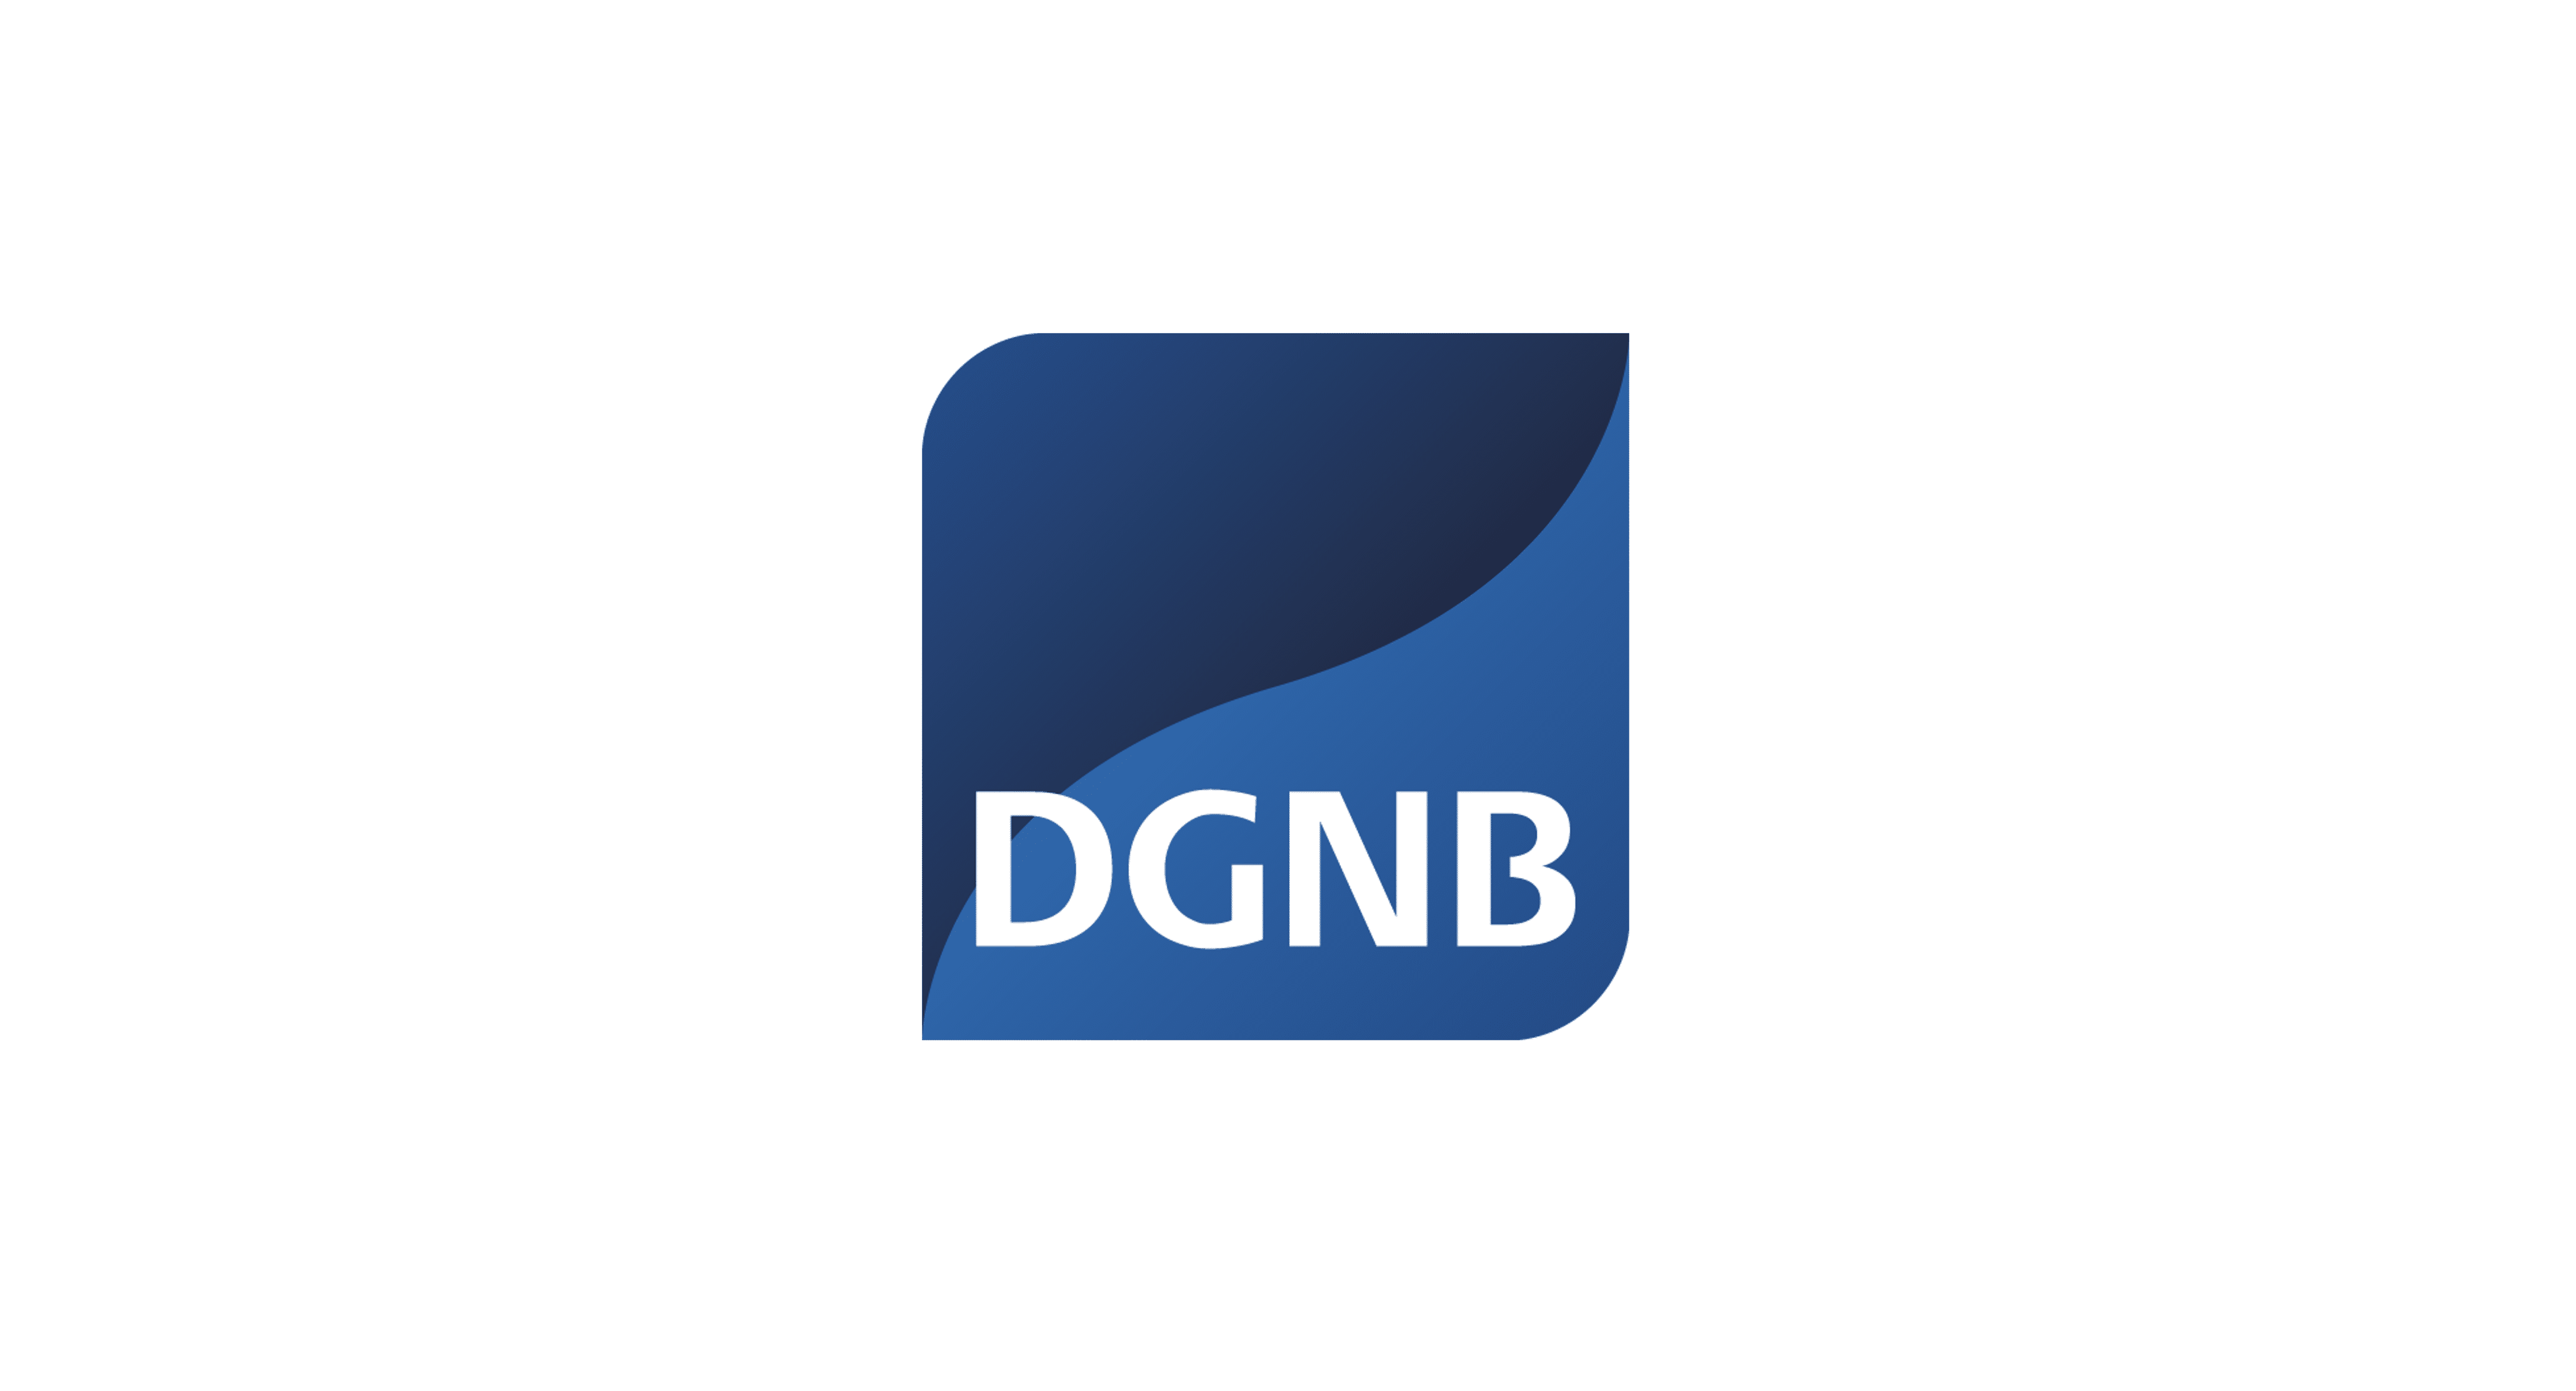 Deutsches Gütesiegel Nachhaltiges Bauen DGNB Auditor Zertifizierung